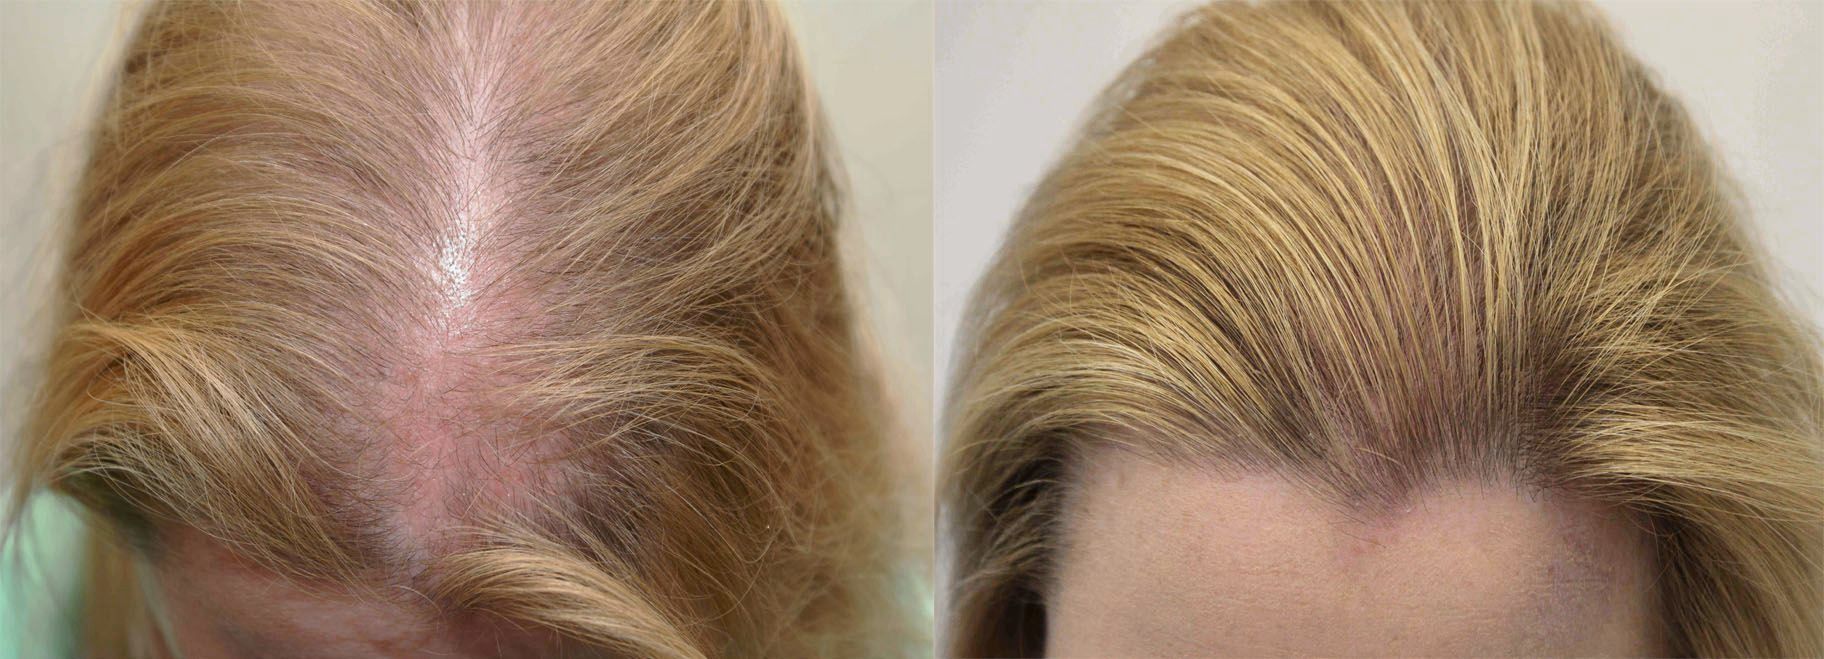 Ломаются и выпадают волосы что делать. Мезотерапия волос до и после.